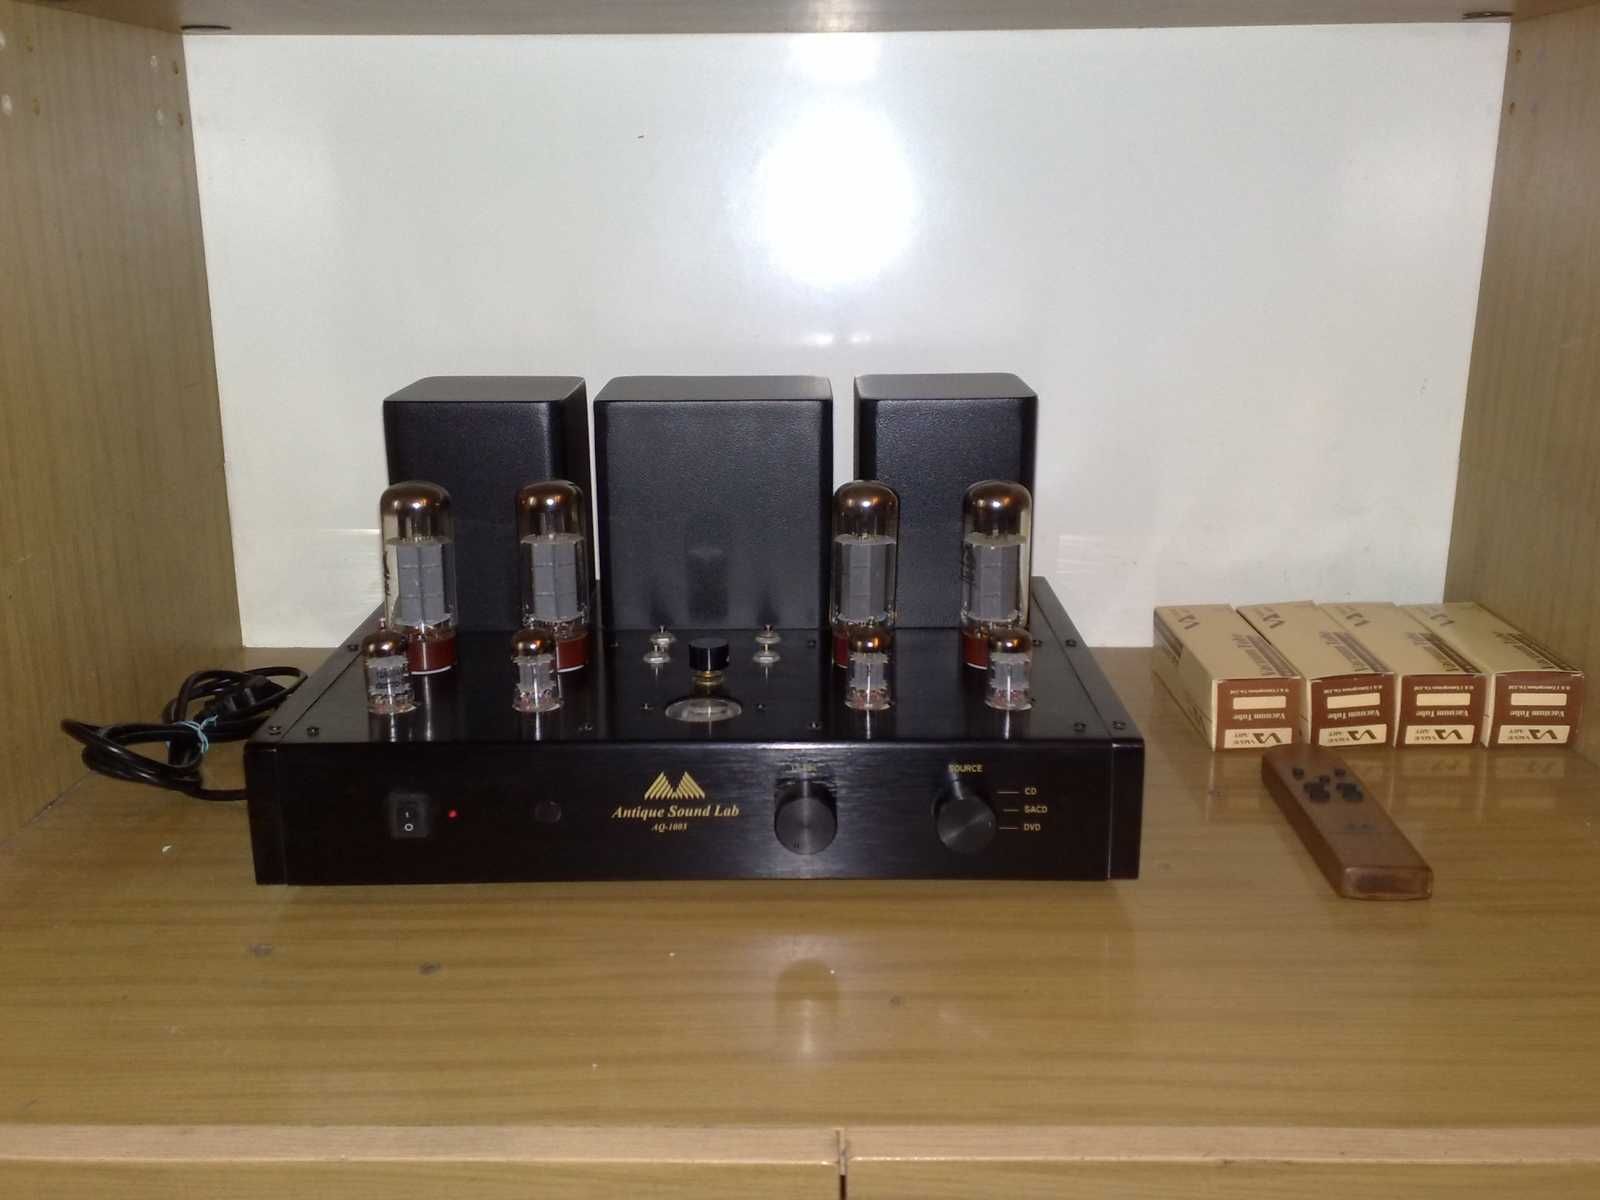 Antique Sound Lab AQ-1003 - pierwszy właściciel